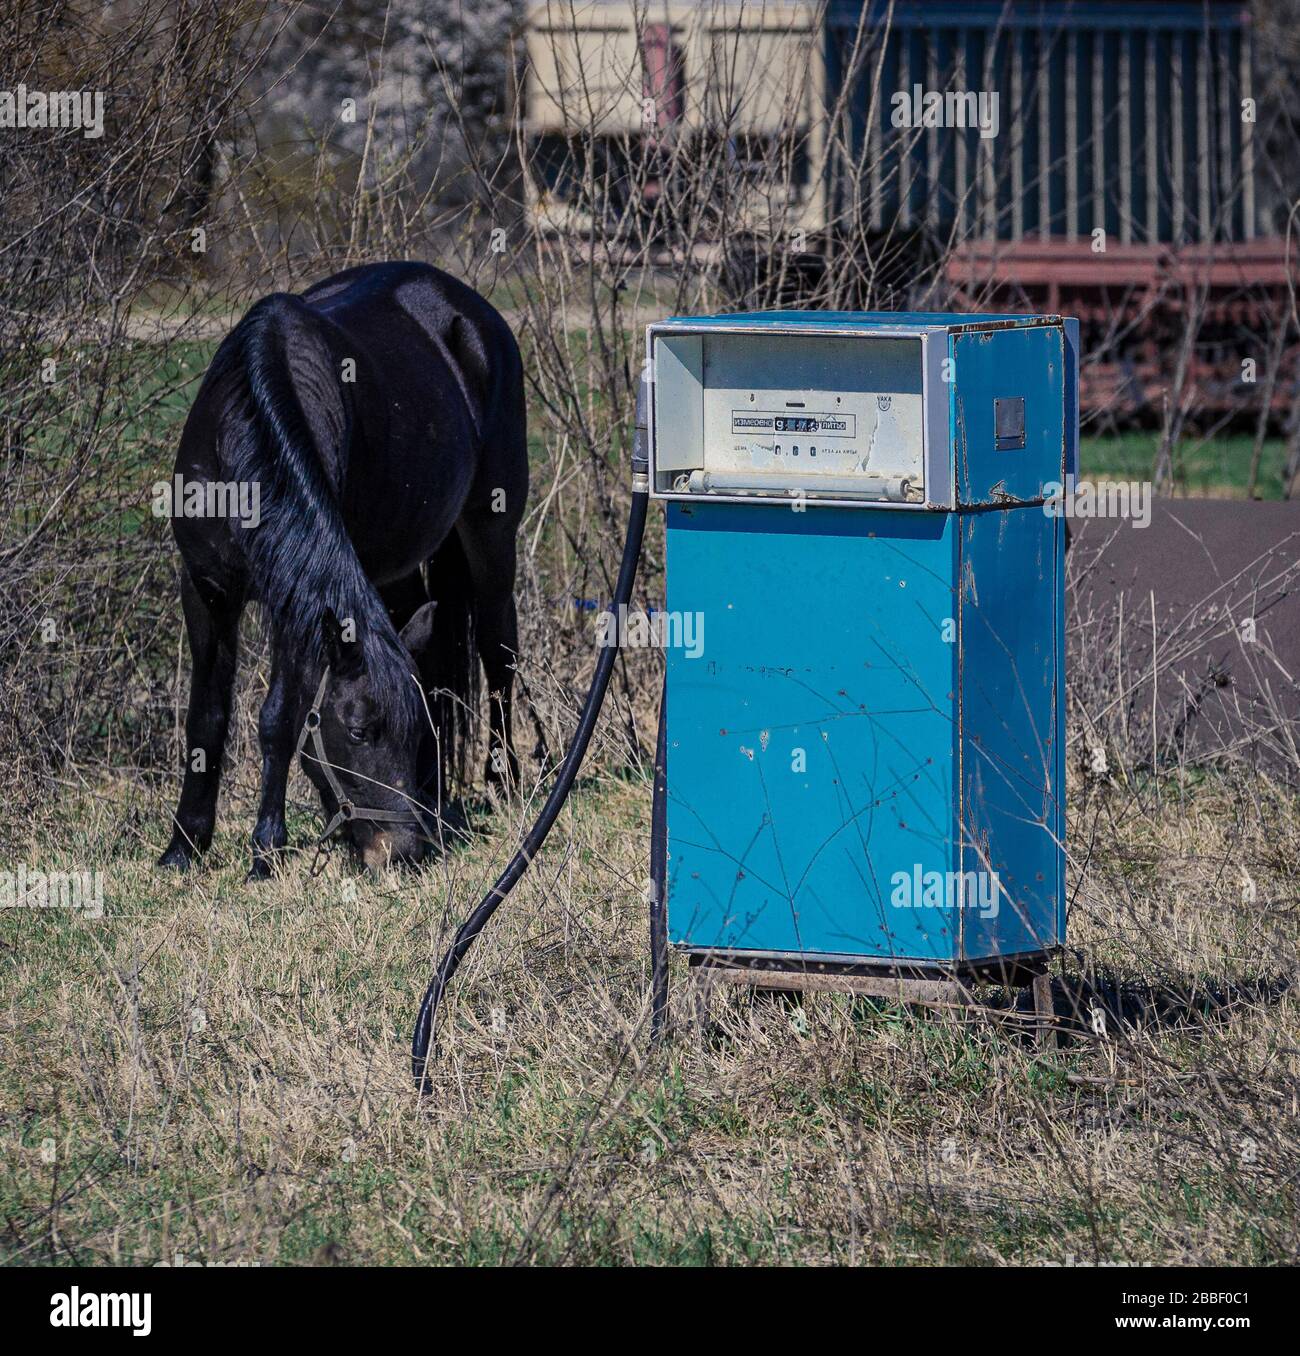 Vecchia pompa benzina blu dell'europa orientale disusata in campo agricolo con un cavallo di pascolo Bulgaria Foto Stock